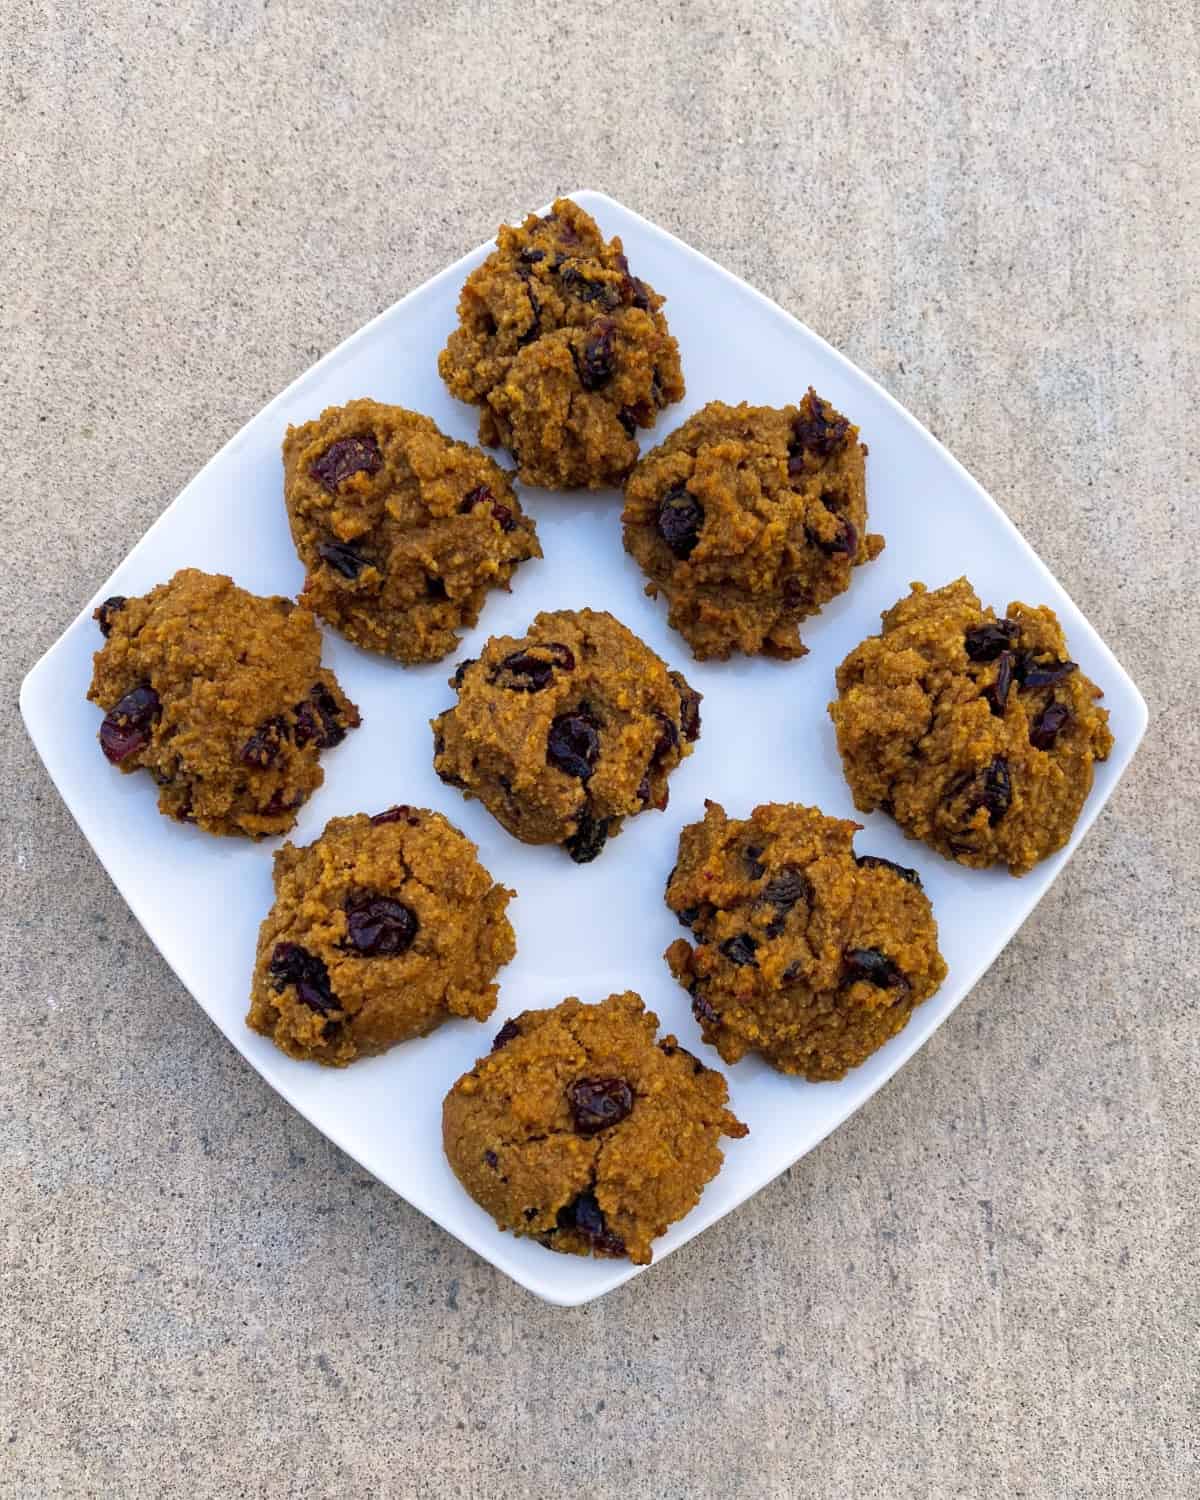 Fresh baked gluten-free pumpkin quinoa cranberry cookies on serving platter from above.